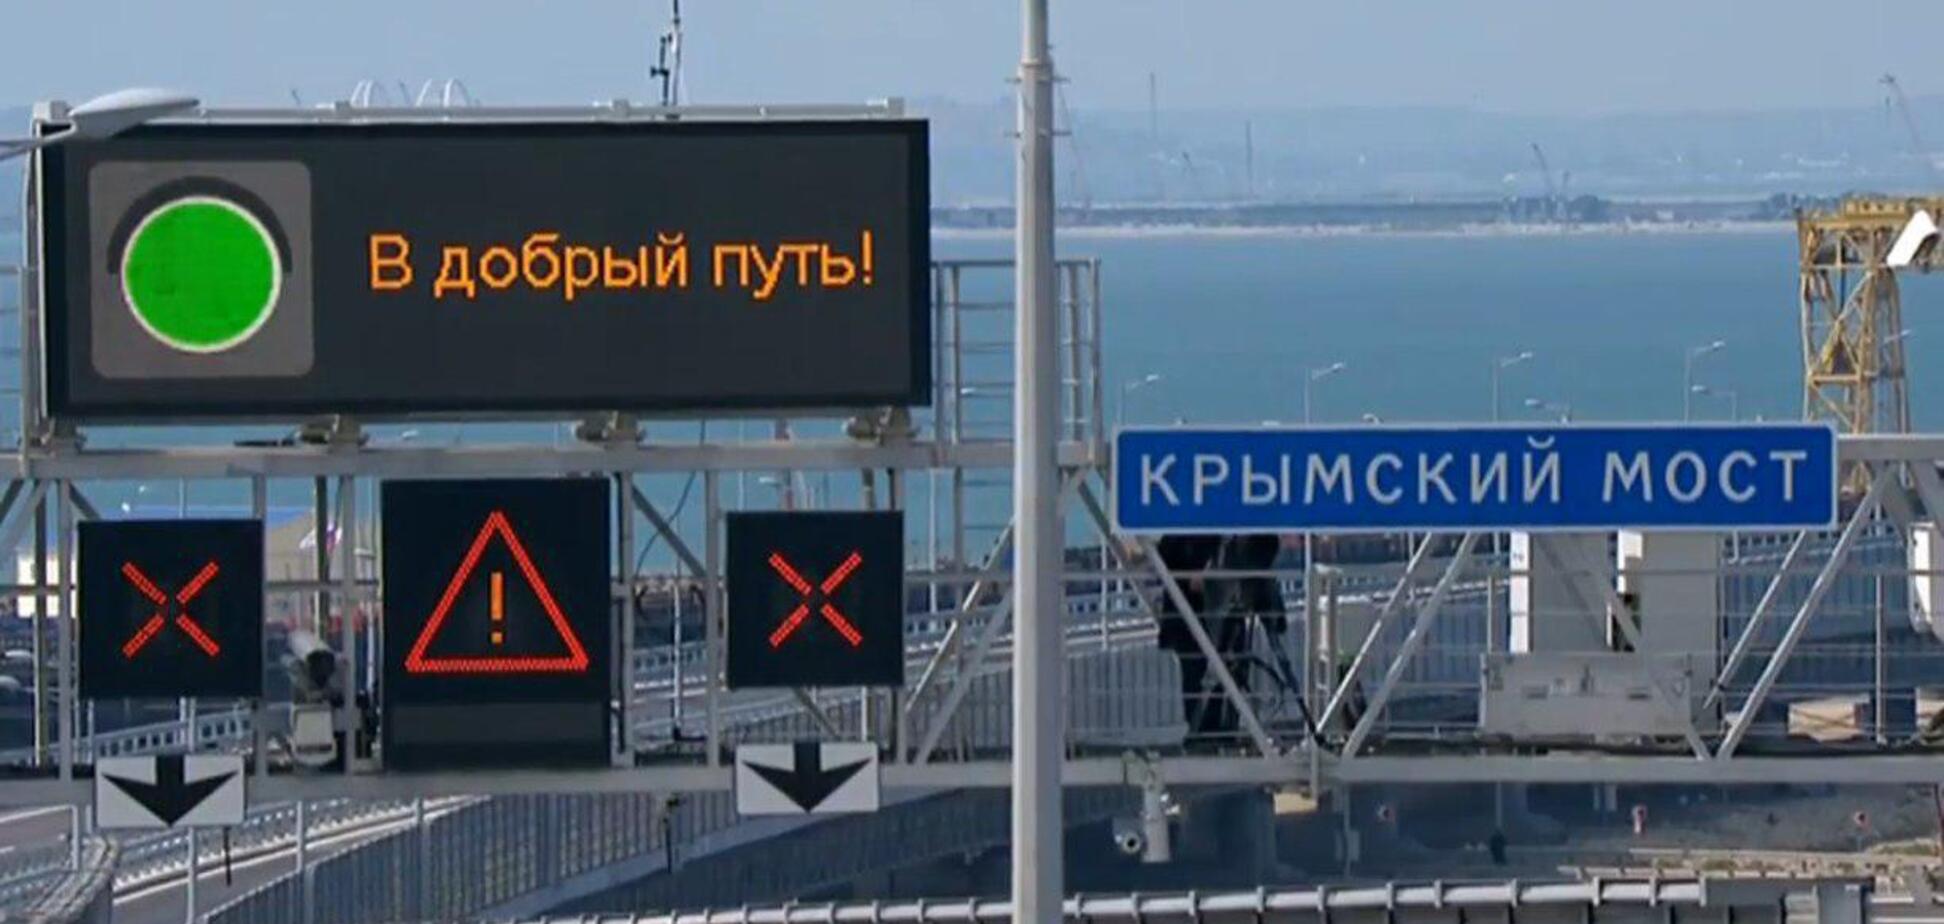 'Кришталевий': відкриття Кримського моста висміяли в їдкій карикатурі